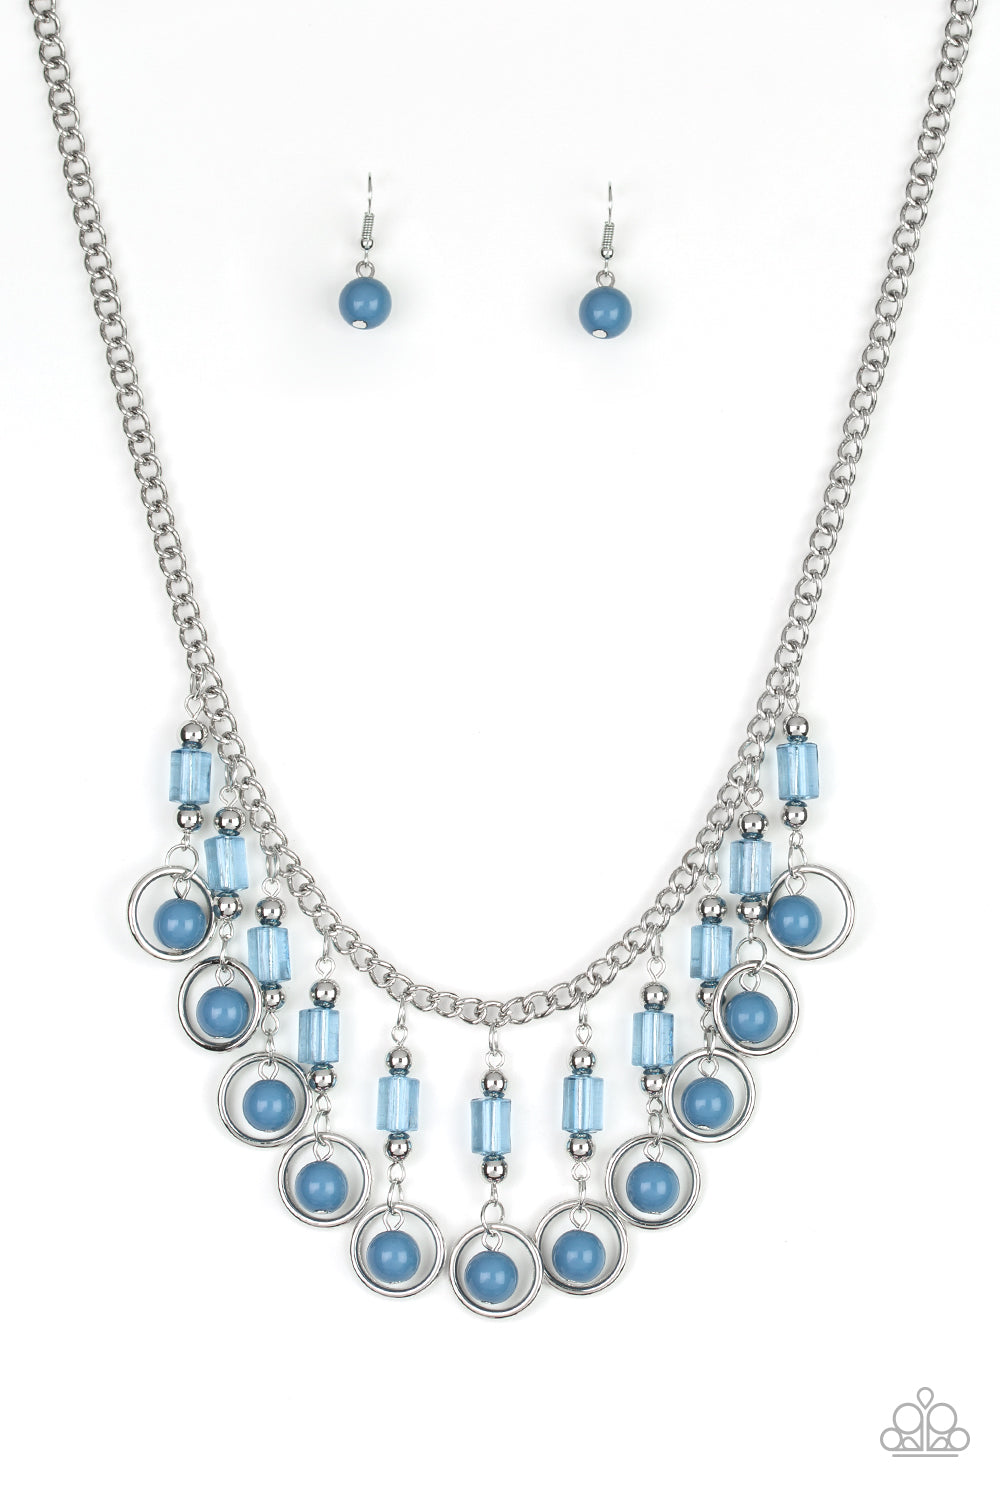 Cool Cascade Blue Paparazzi Necklace Cashmere Pink Jewels - Cashmere Pink Jewels & Accessories, Cashmere Pink Jewels & Accessories - Paparazzi